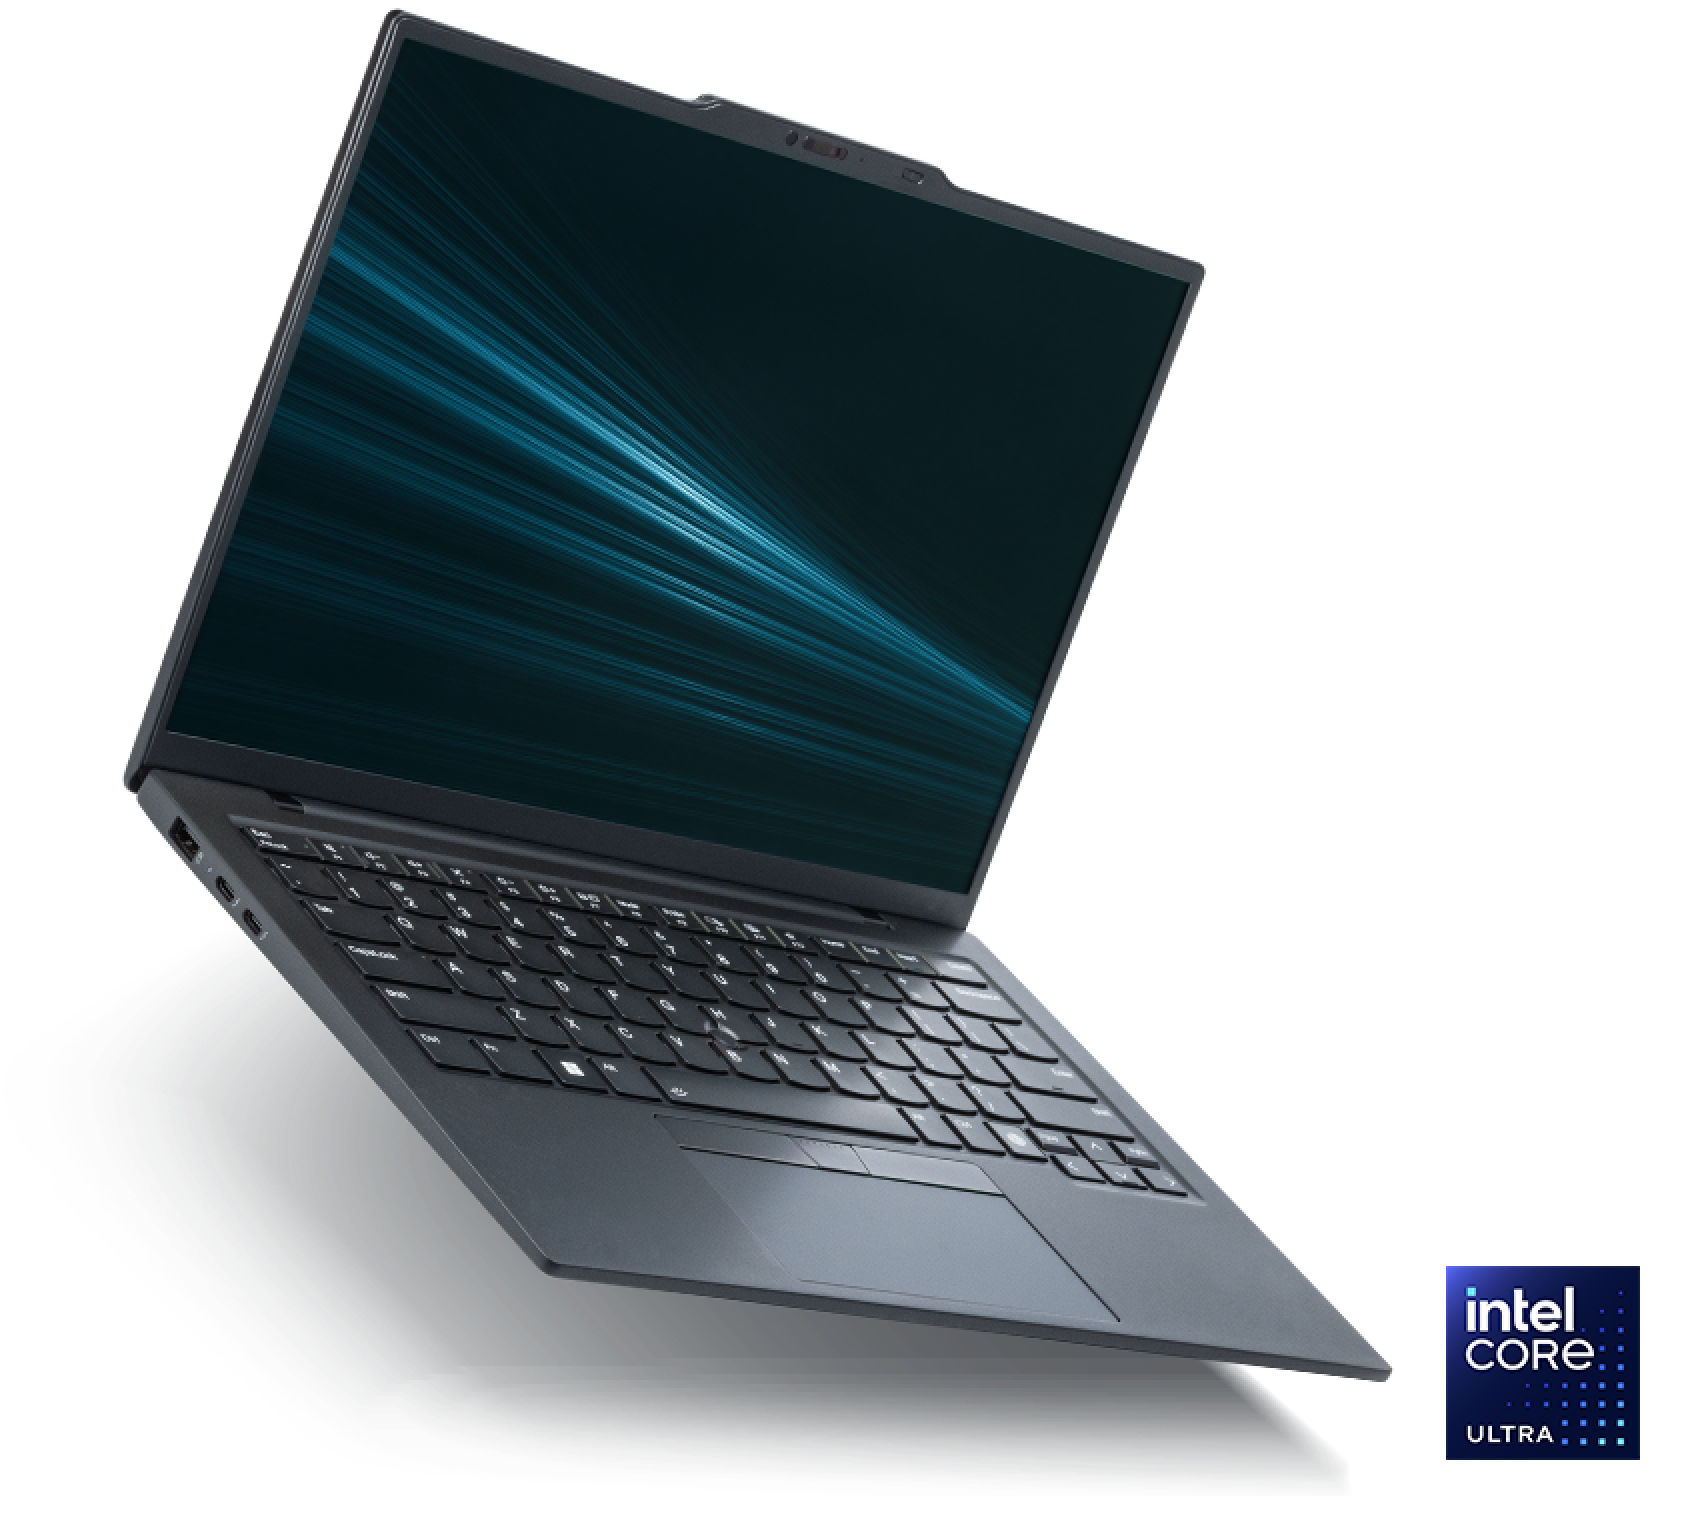 인텔 코어 Ultra 프로세서가 탑재된 인텔 Evo 에디션 노트북.